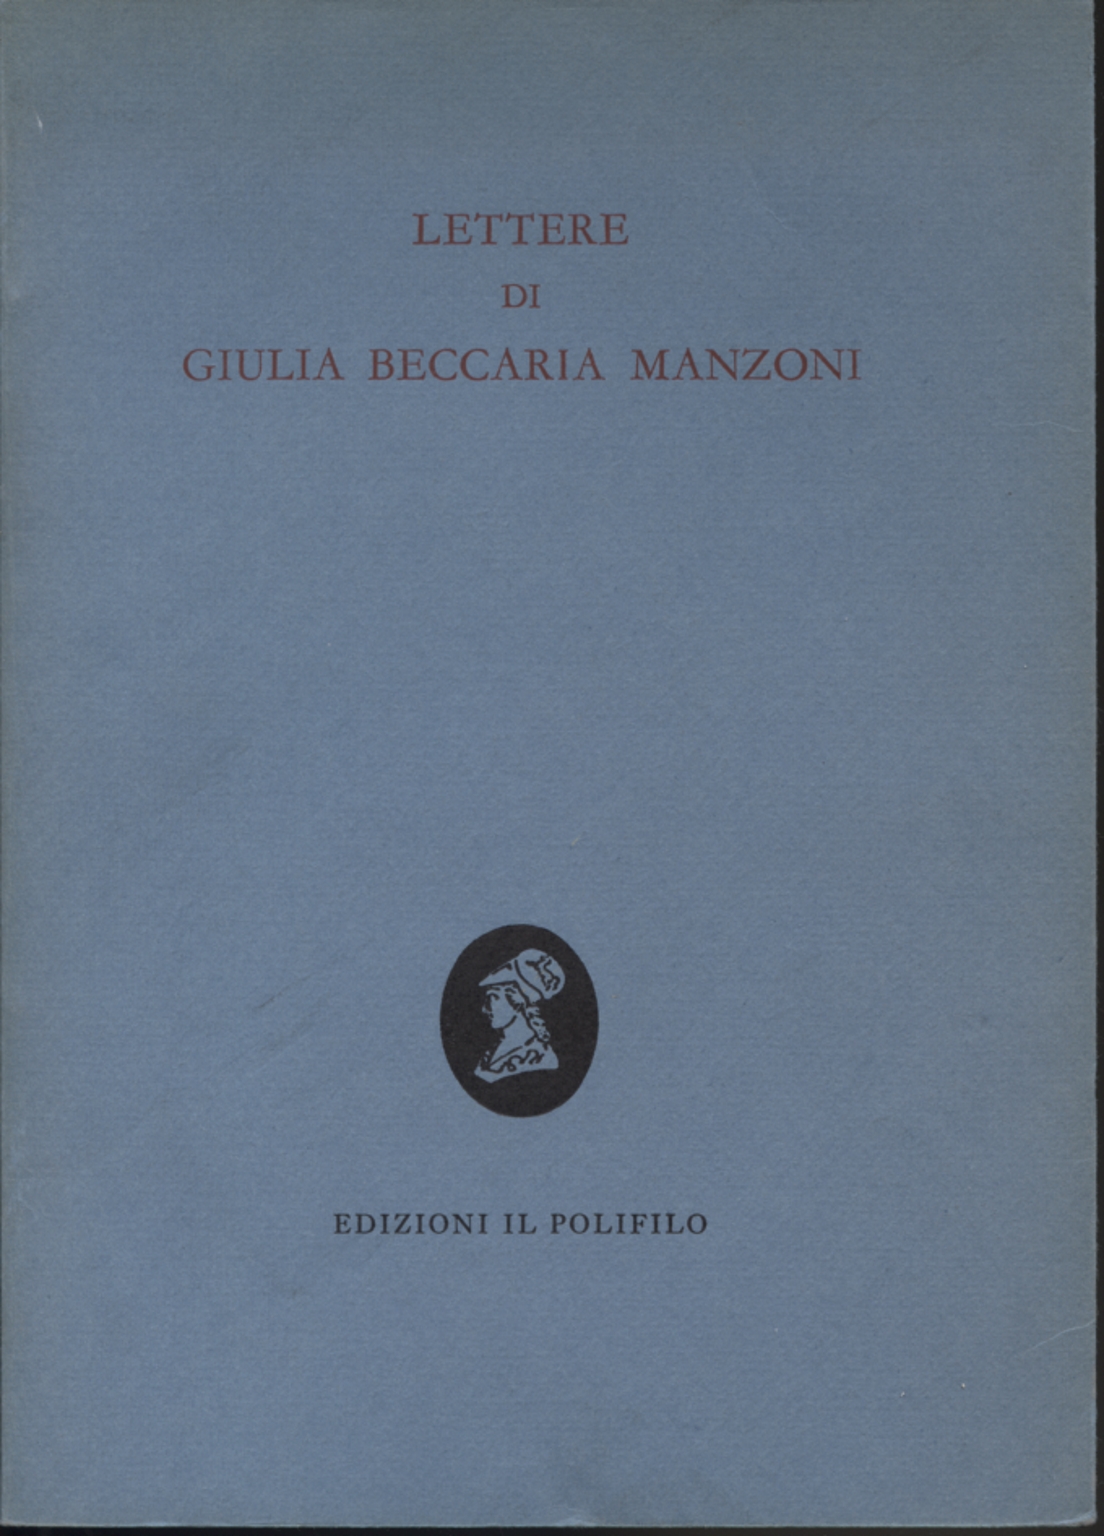 Letters by Giulia Beccaria Manzoni, Maria Grazia Griffini